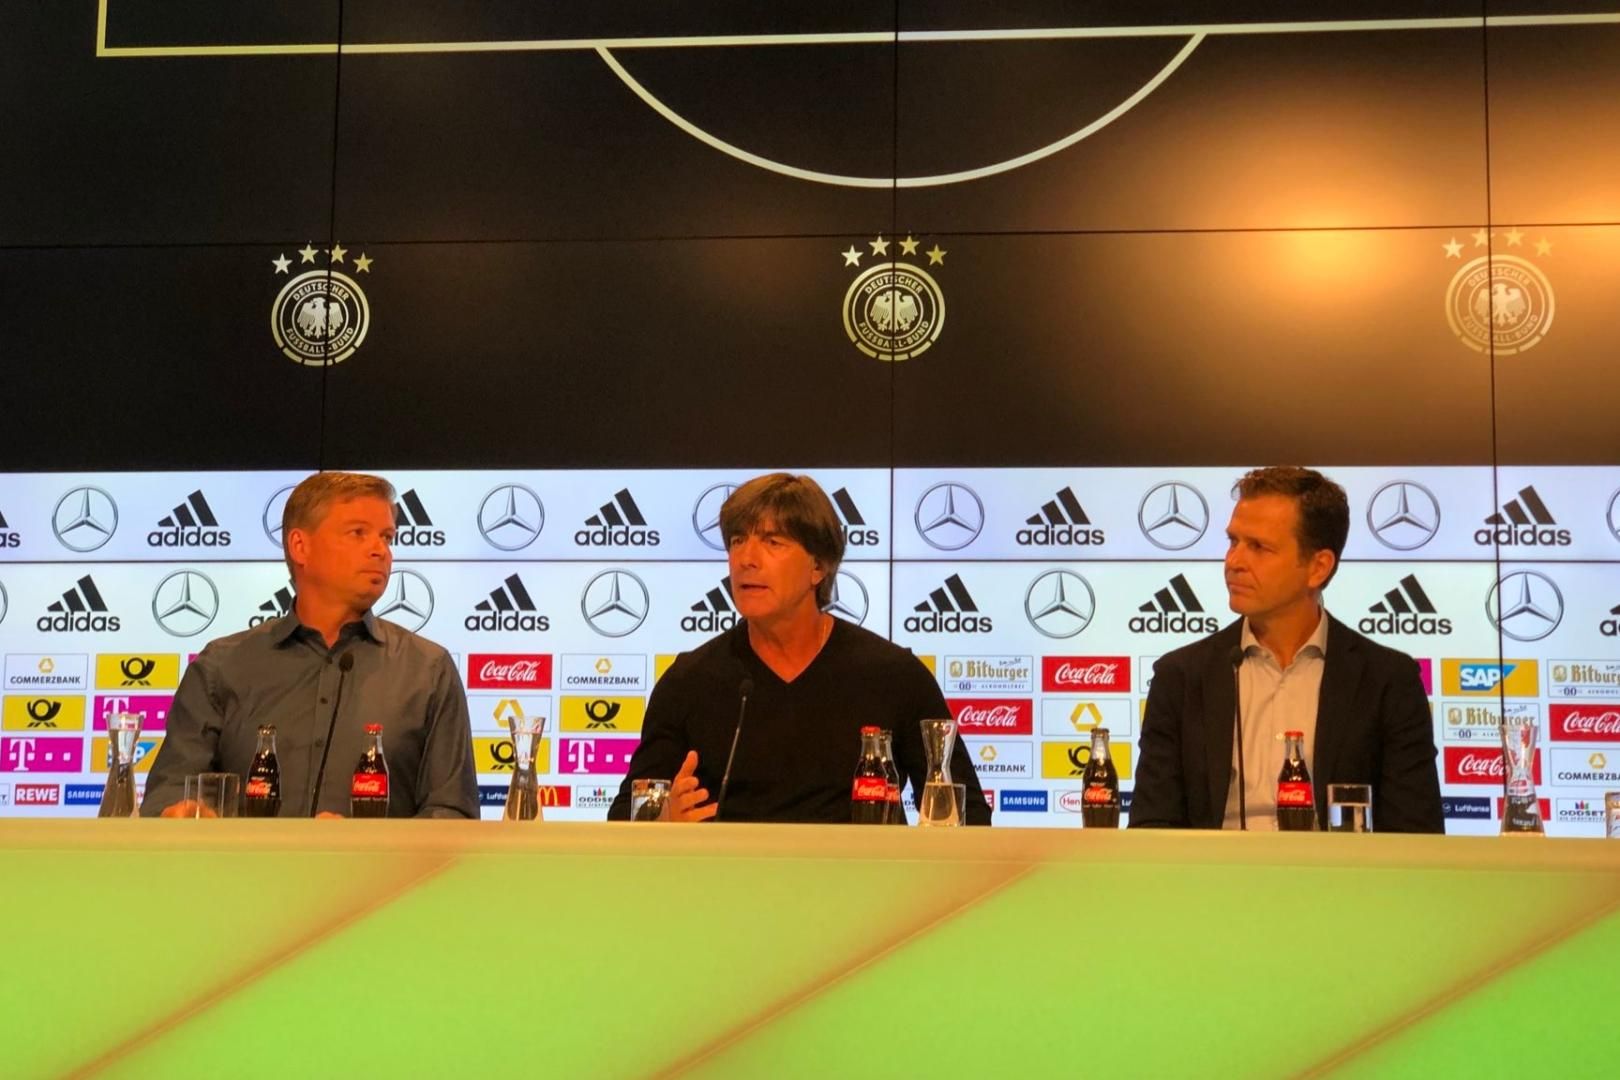 Técnico da Alemanha convoca jovens promessas para as Eliminatórias da Copa  - Superesportes